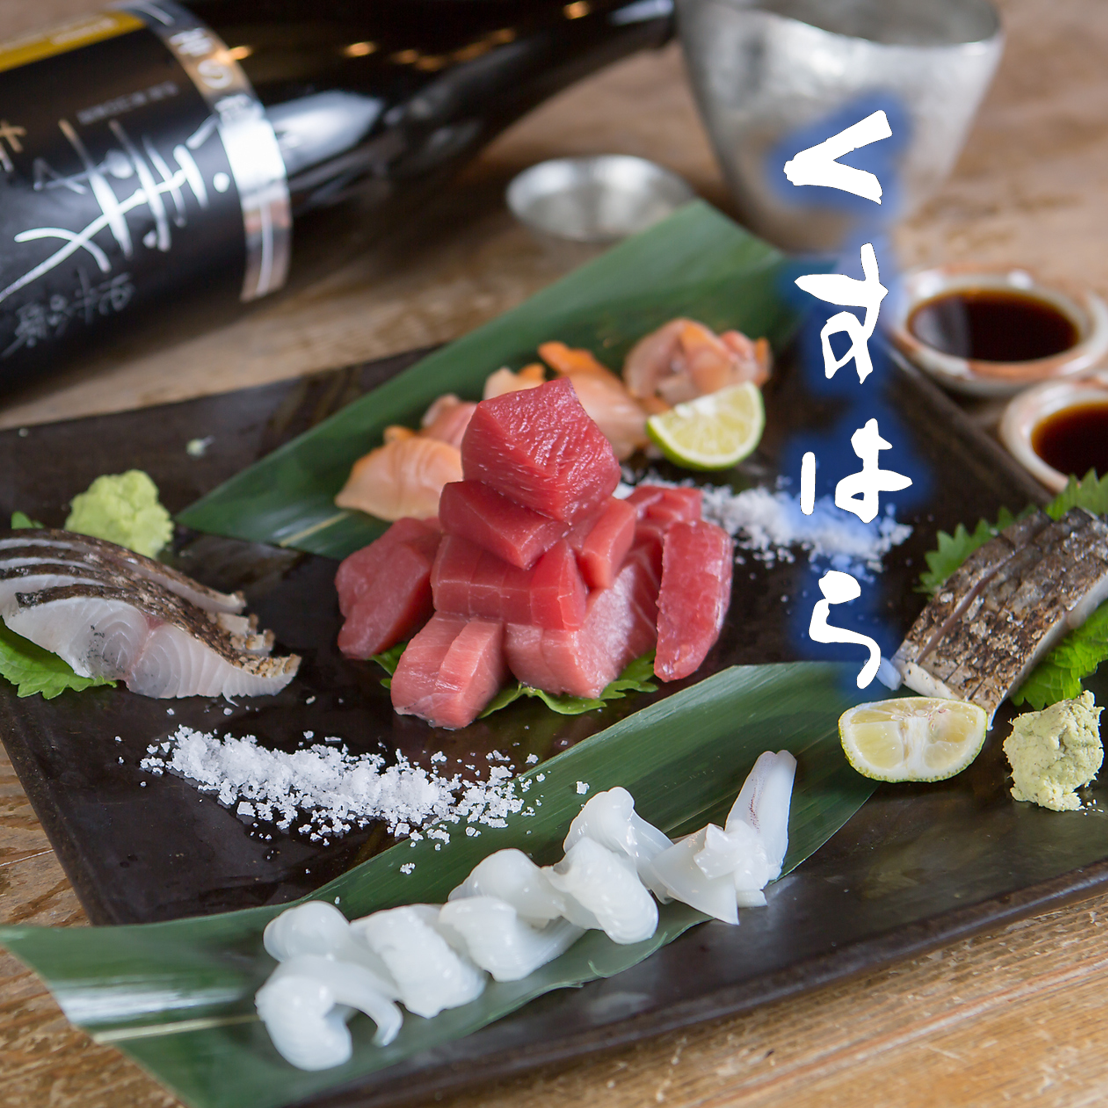 생선과 야채, 일본 쇠고기와 일본술을 차분한 공간에서 느긋하게 맛보는 어른의 은신처 선술집♪